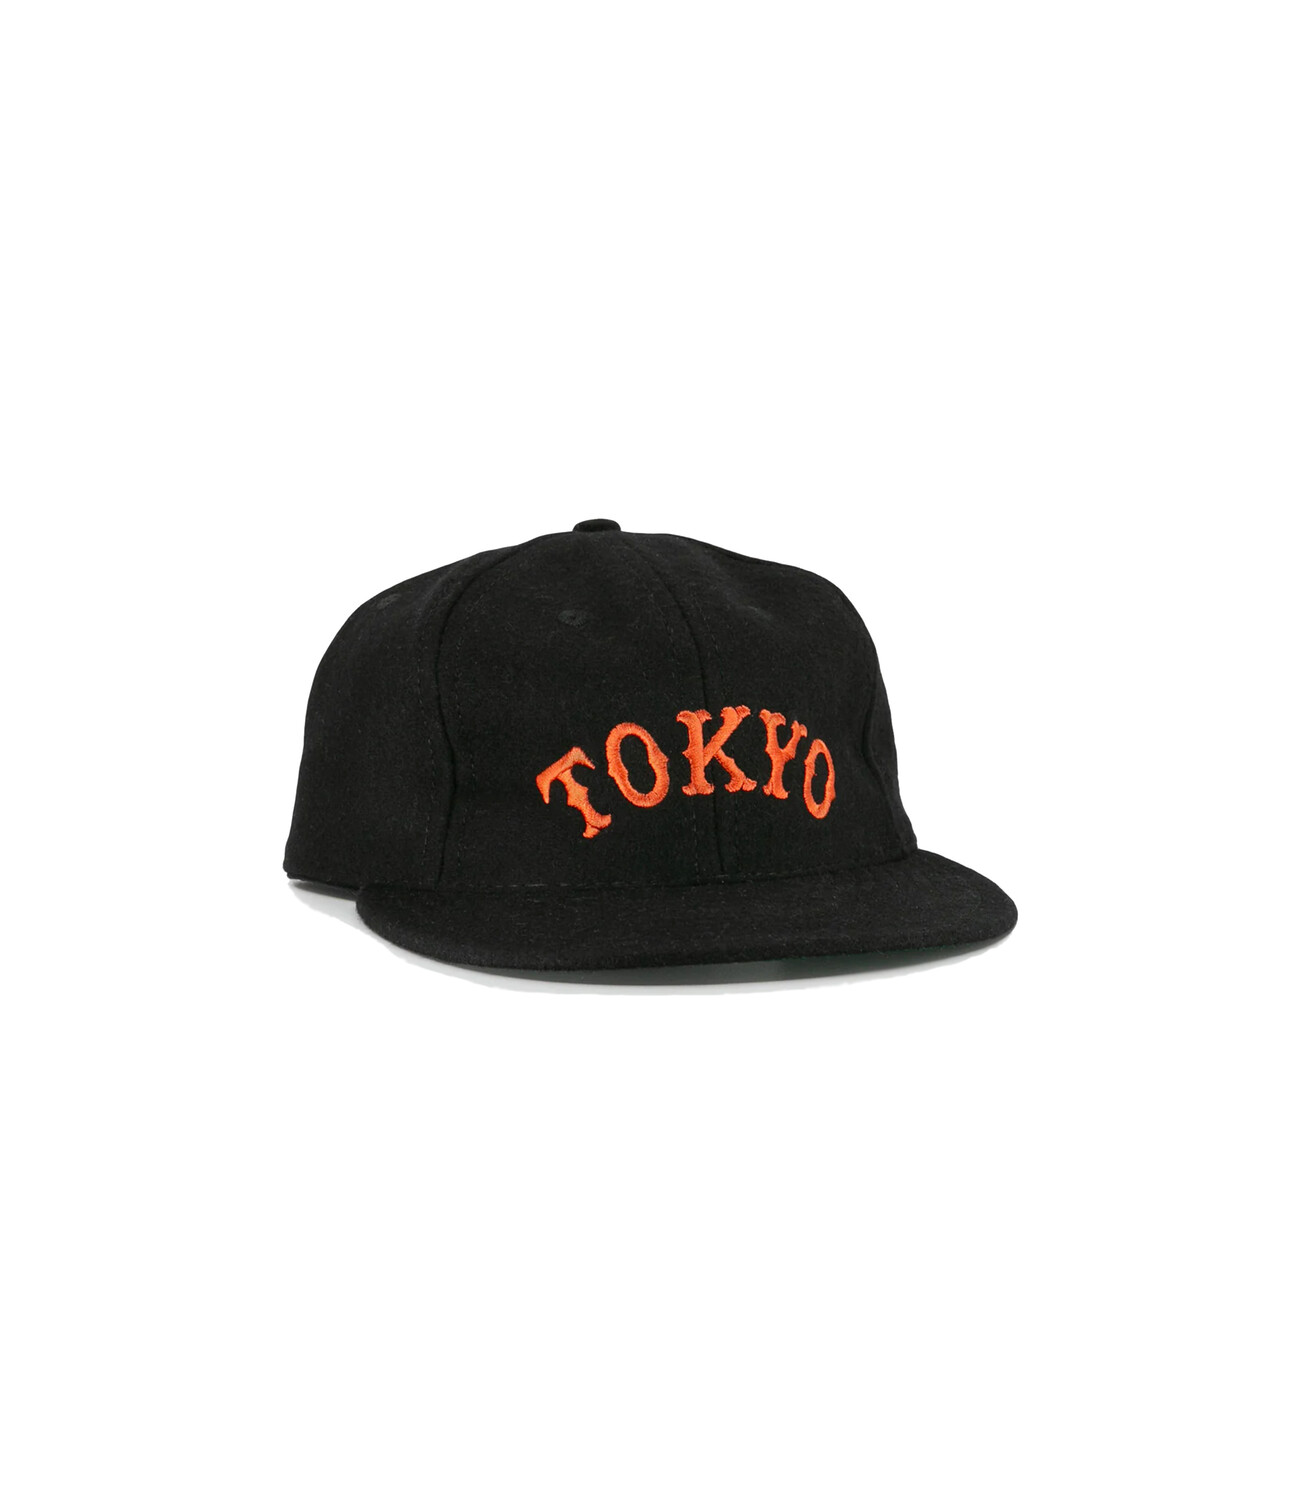 Tokyo Kyojin Giants City Series - Black